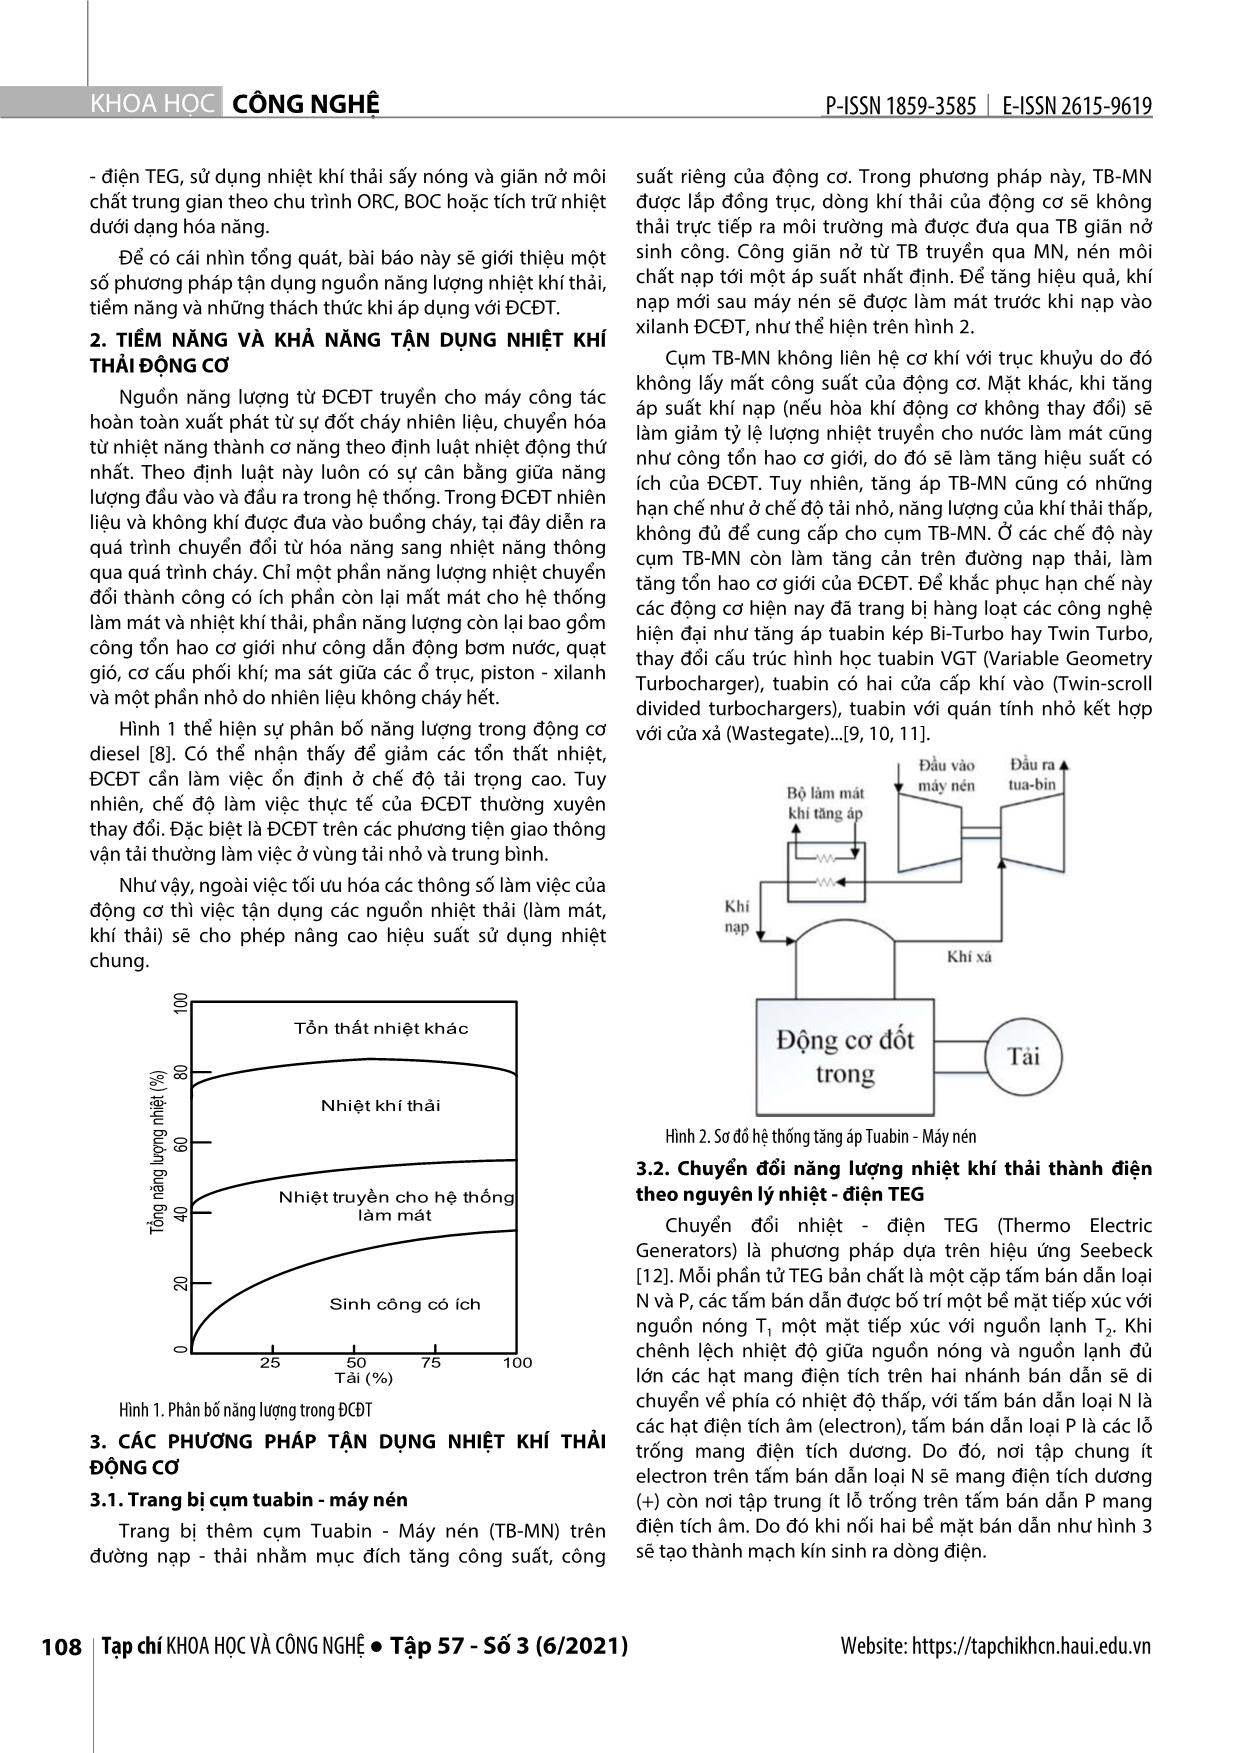 Các phương pháp tận dụng năng lượng nhiệt khí thải trong động cơ đốt trong trang 2